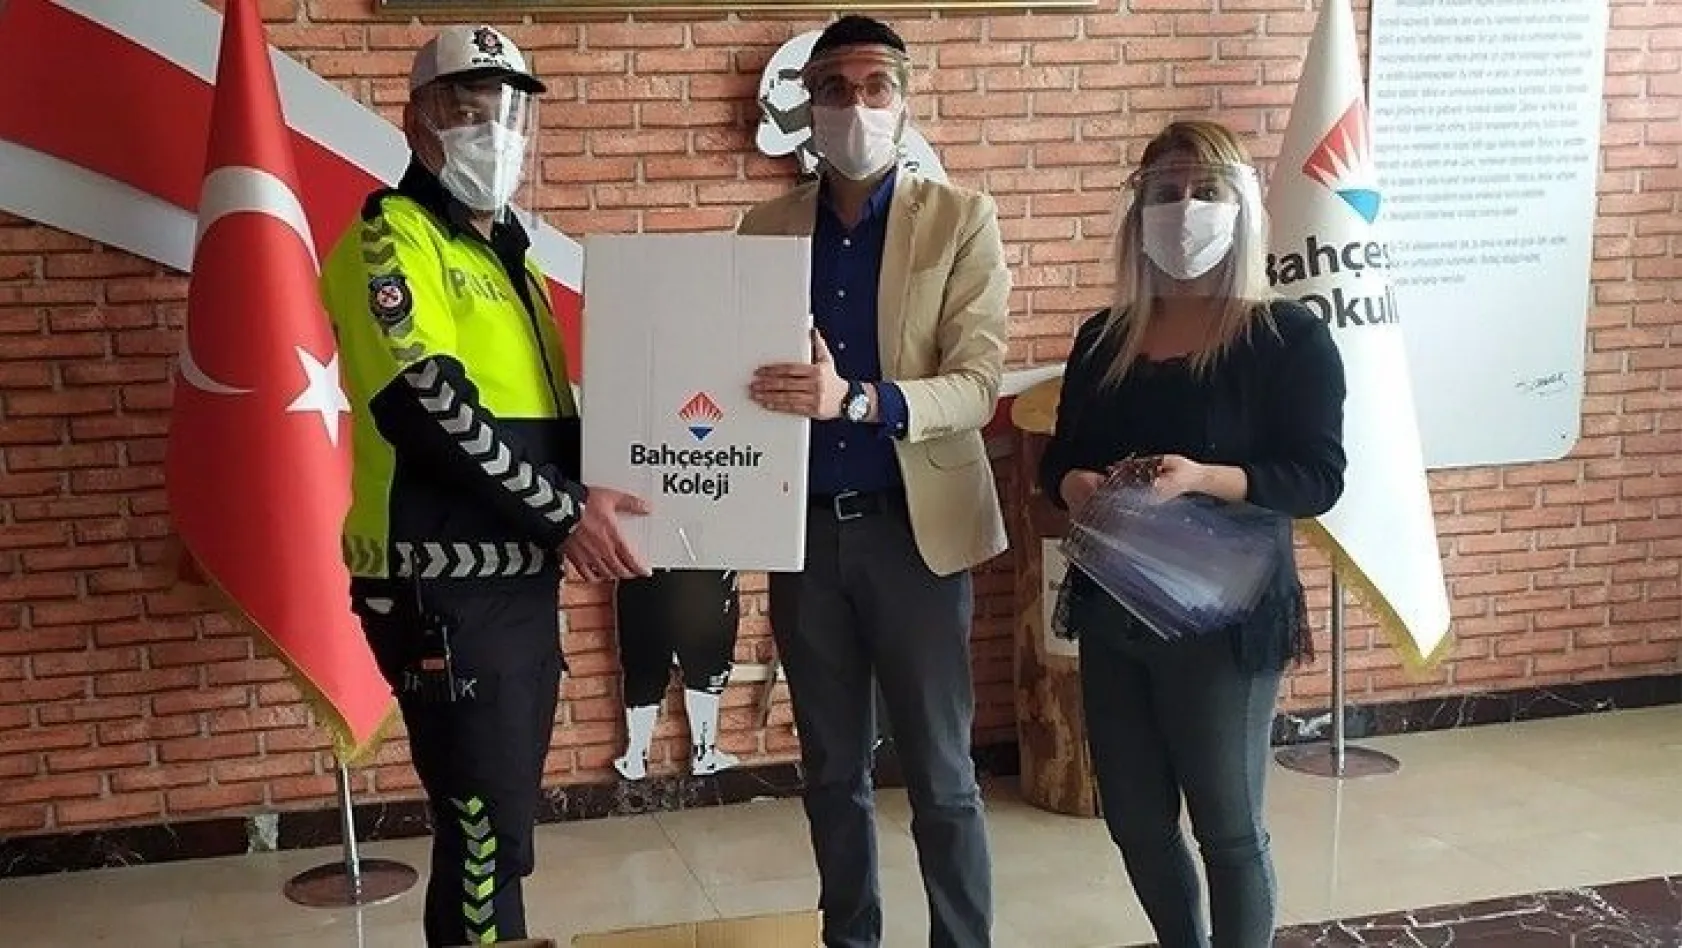 Elazığ Bahçeşehir Koleji Covid 19 ile mücadele için yüz siperliği üretti